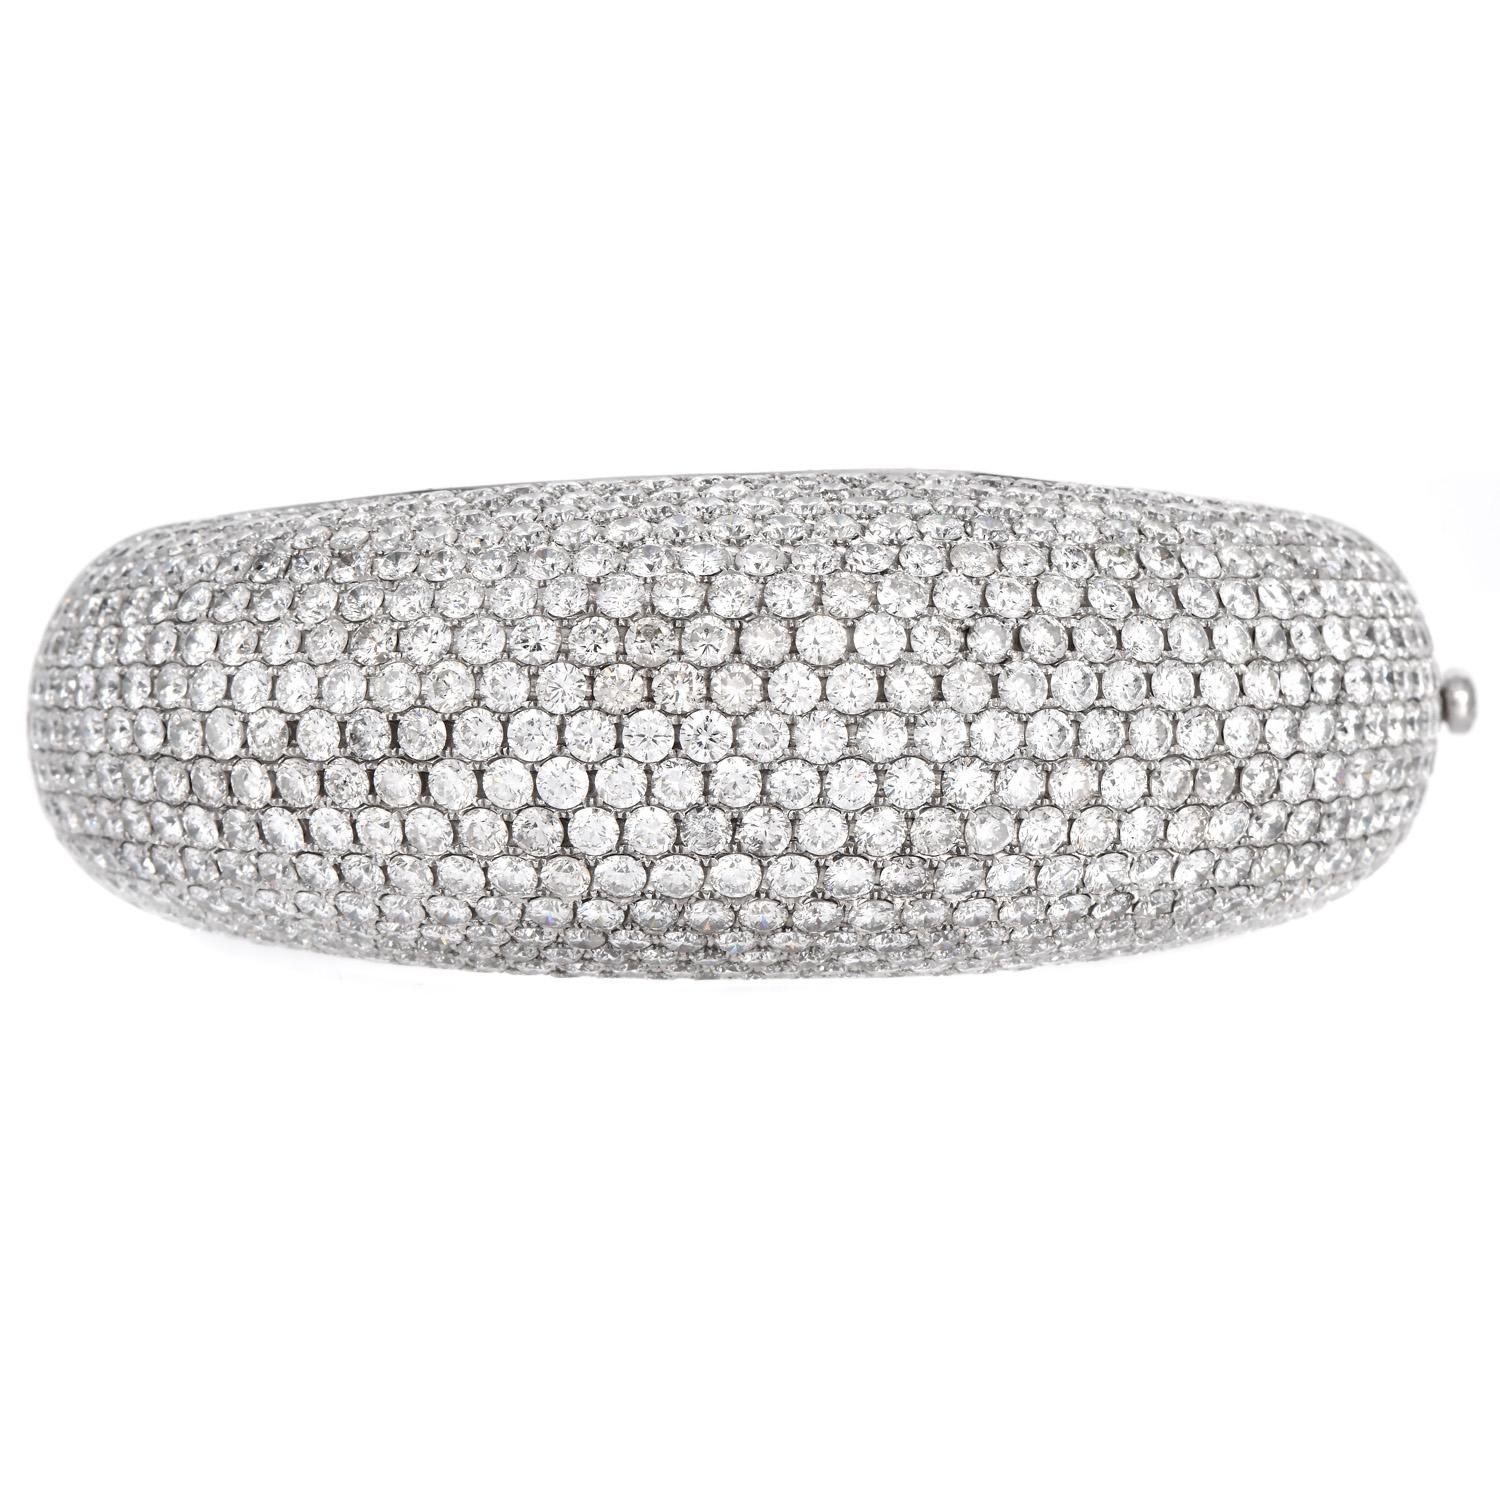 Nous vous présentons un bracelet à diamants à large dôme. Diamants naturels en forme de ligne, sertis clos et pavés, en or blanc massif 18K, avec fermoir à boucle déployante. Bracelet allant de 15 mm de large à 25 mm de large. Décorée de manière